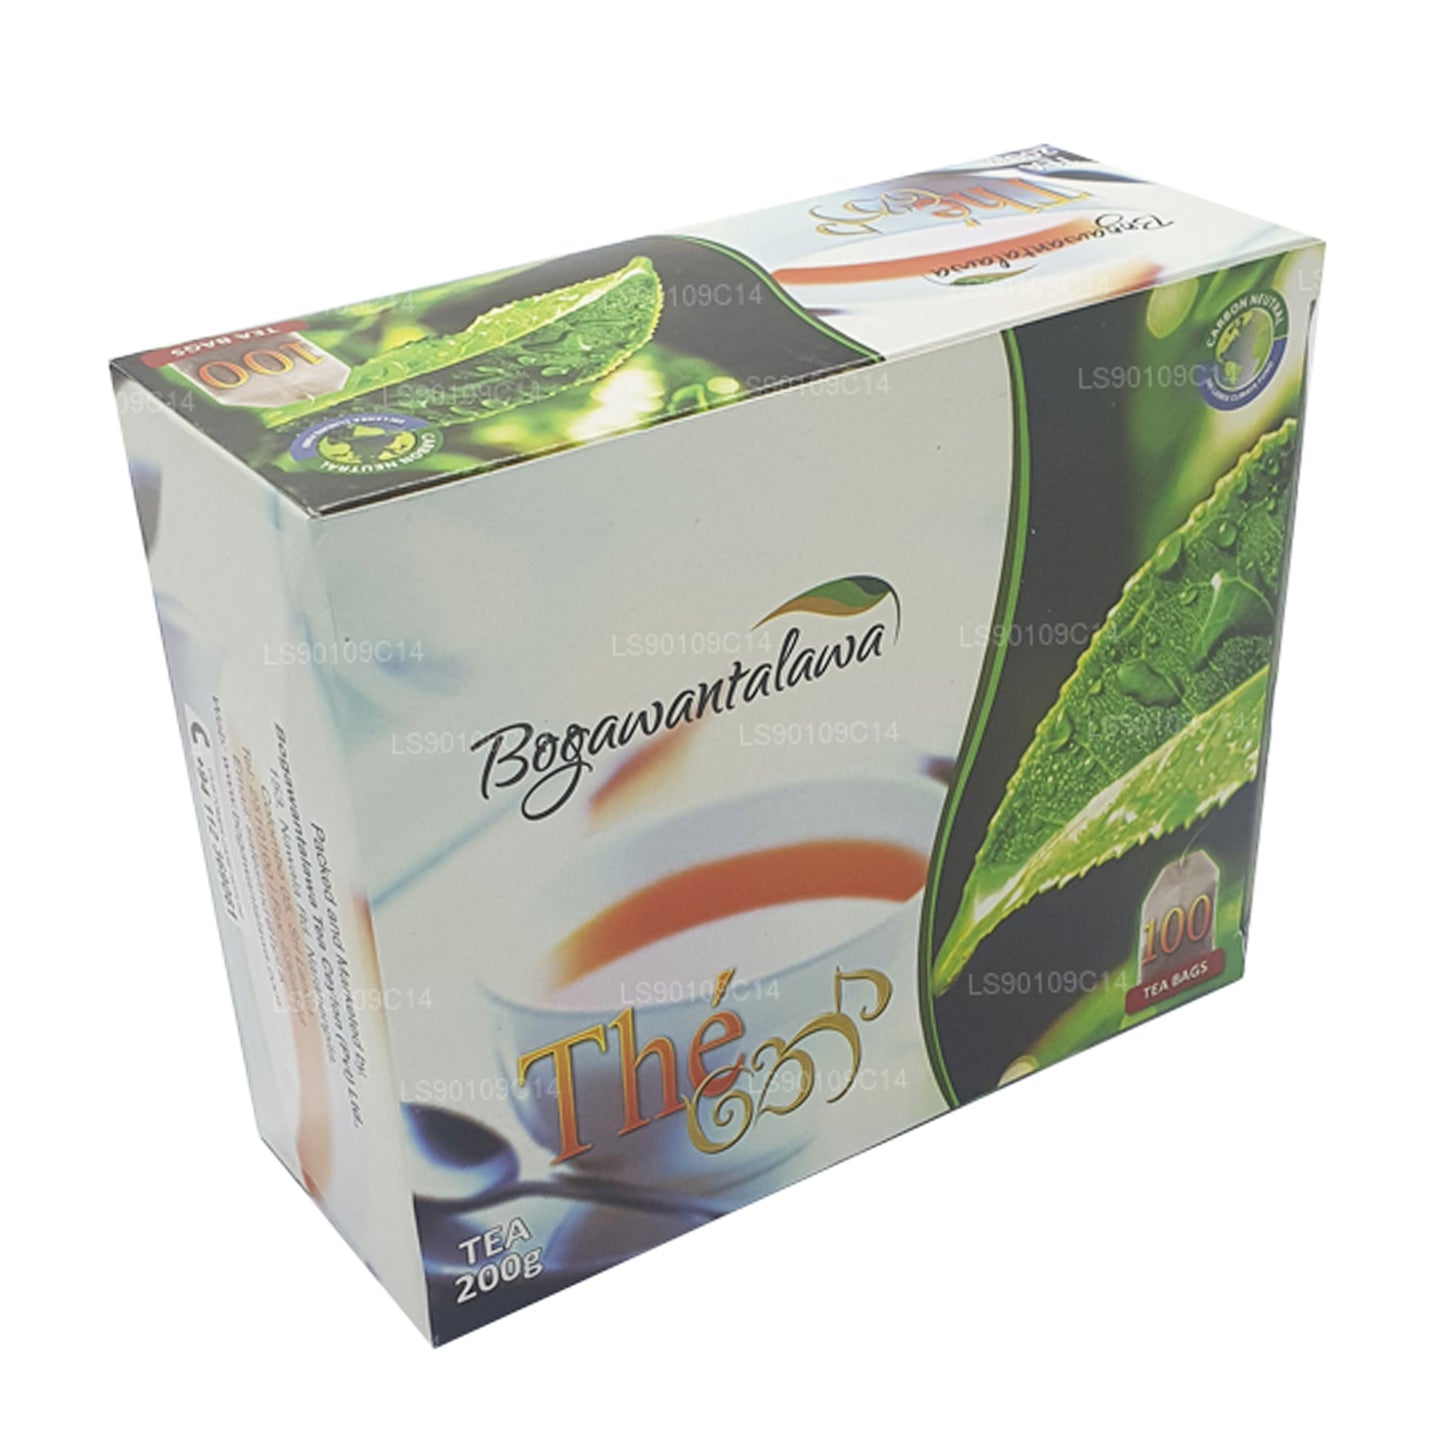 Bogawantalawa thee (200 g) 100 theezakjes